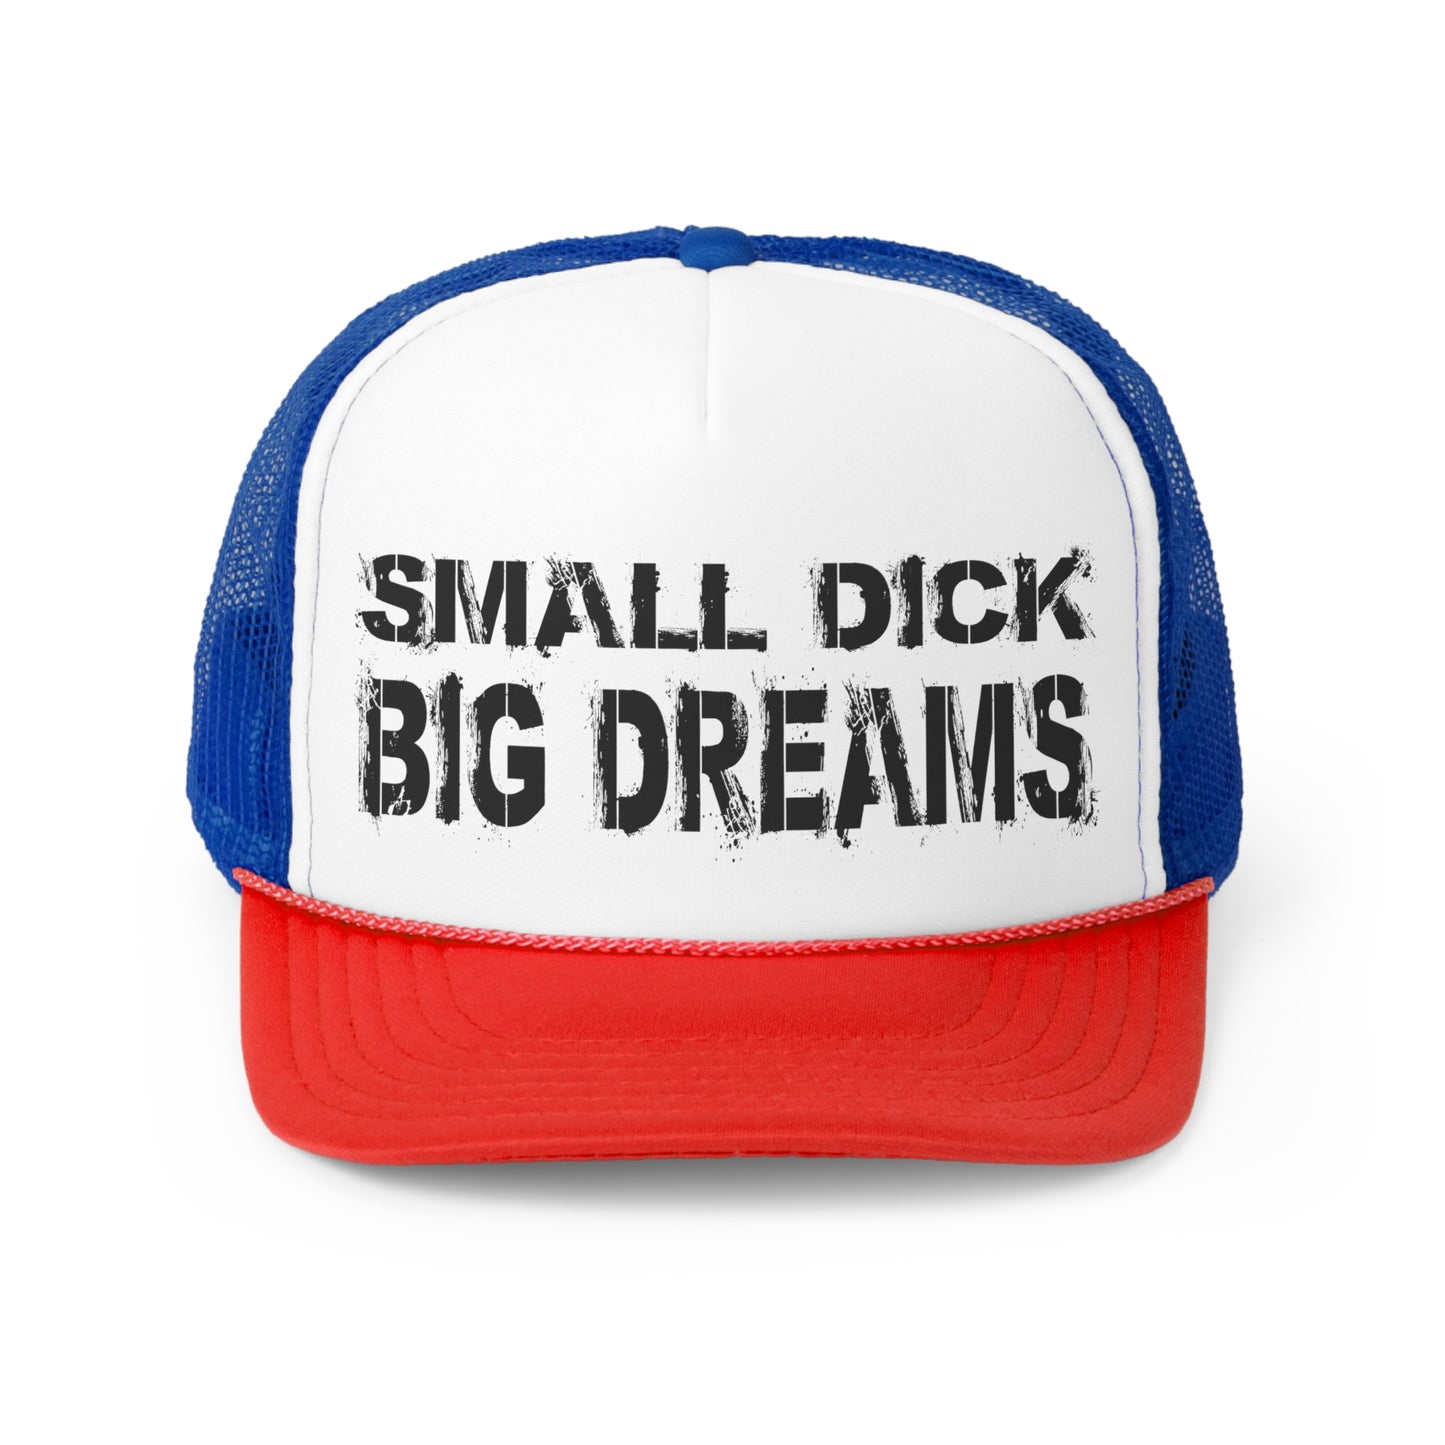 Small D!ck Big Dreams - Trucker Caps